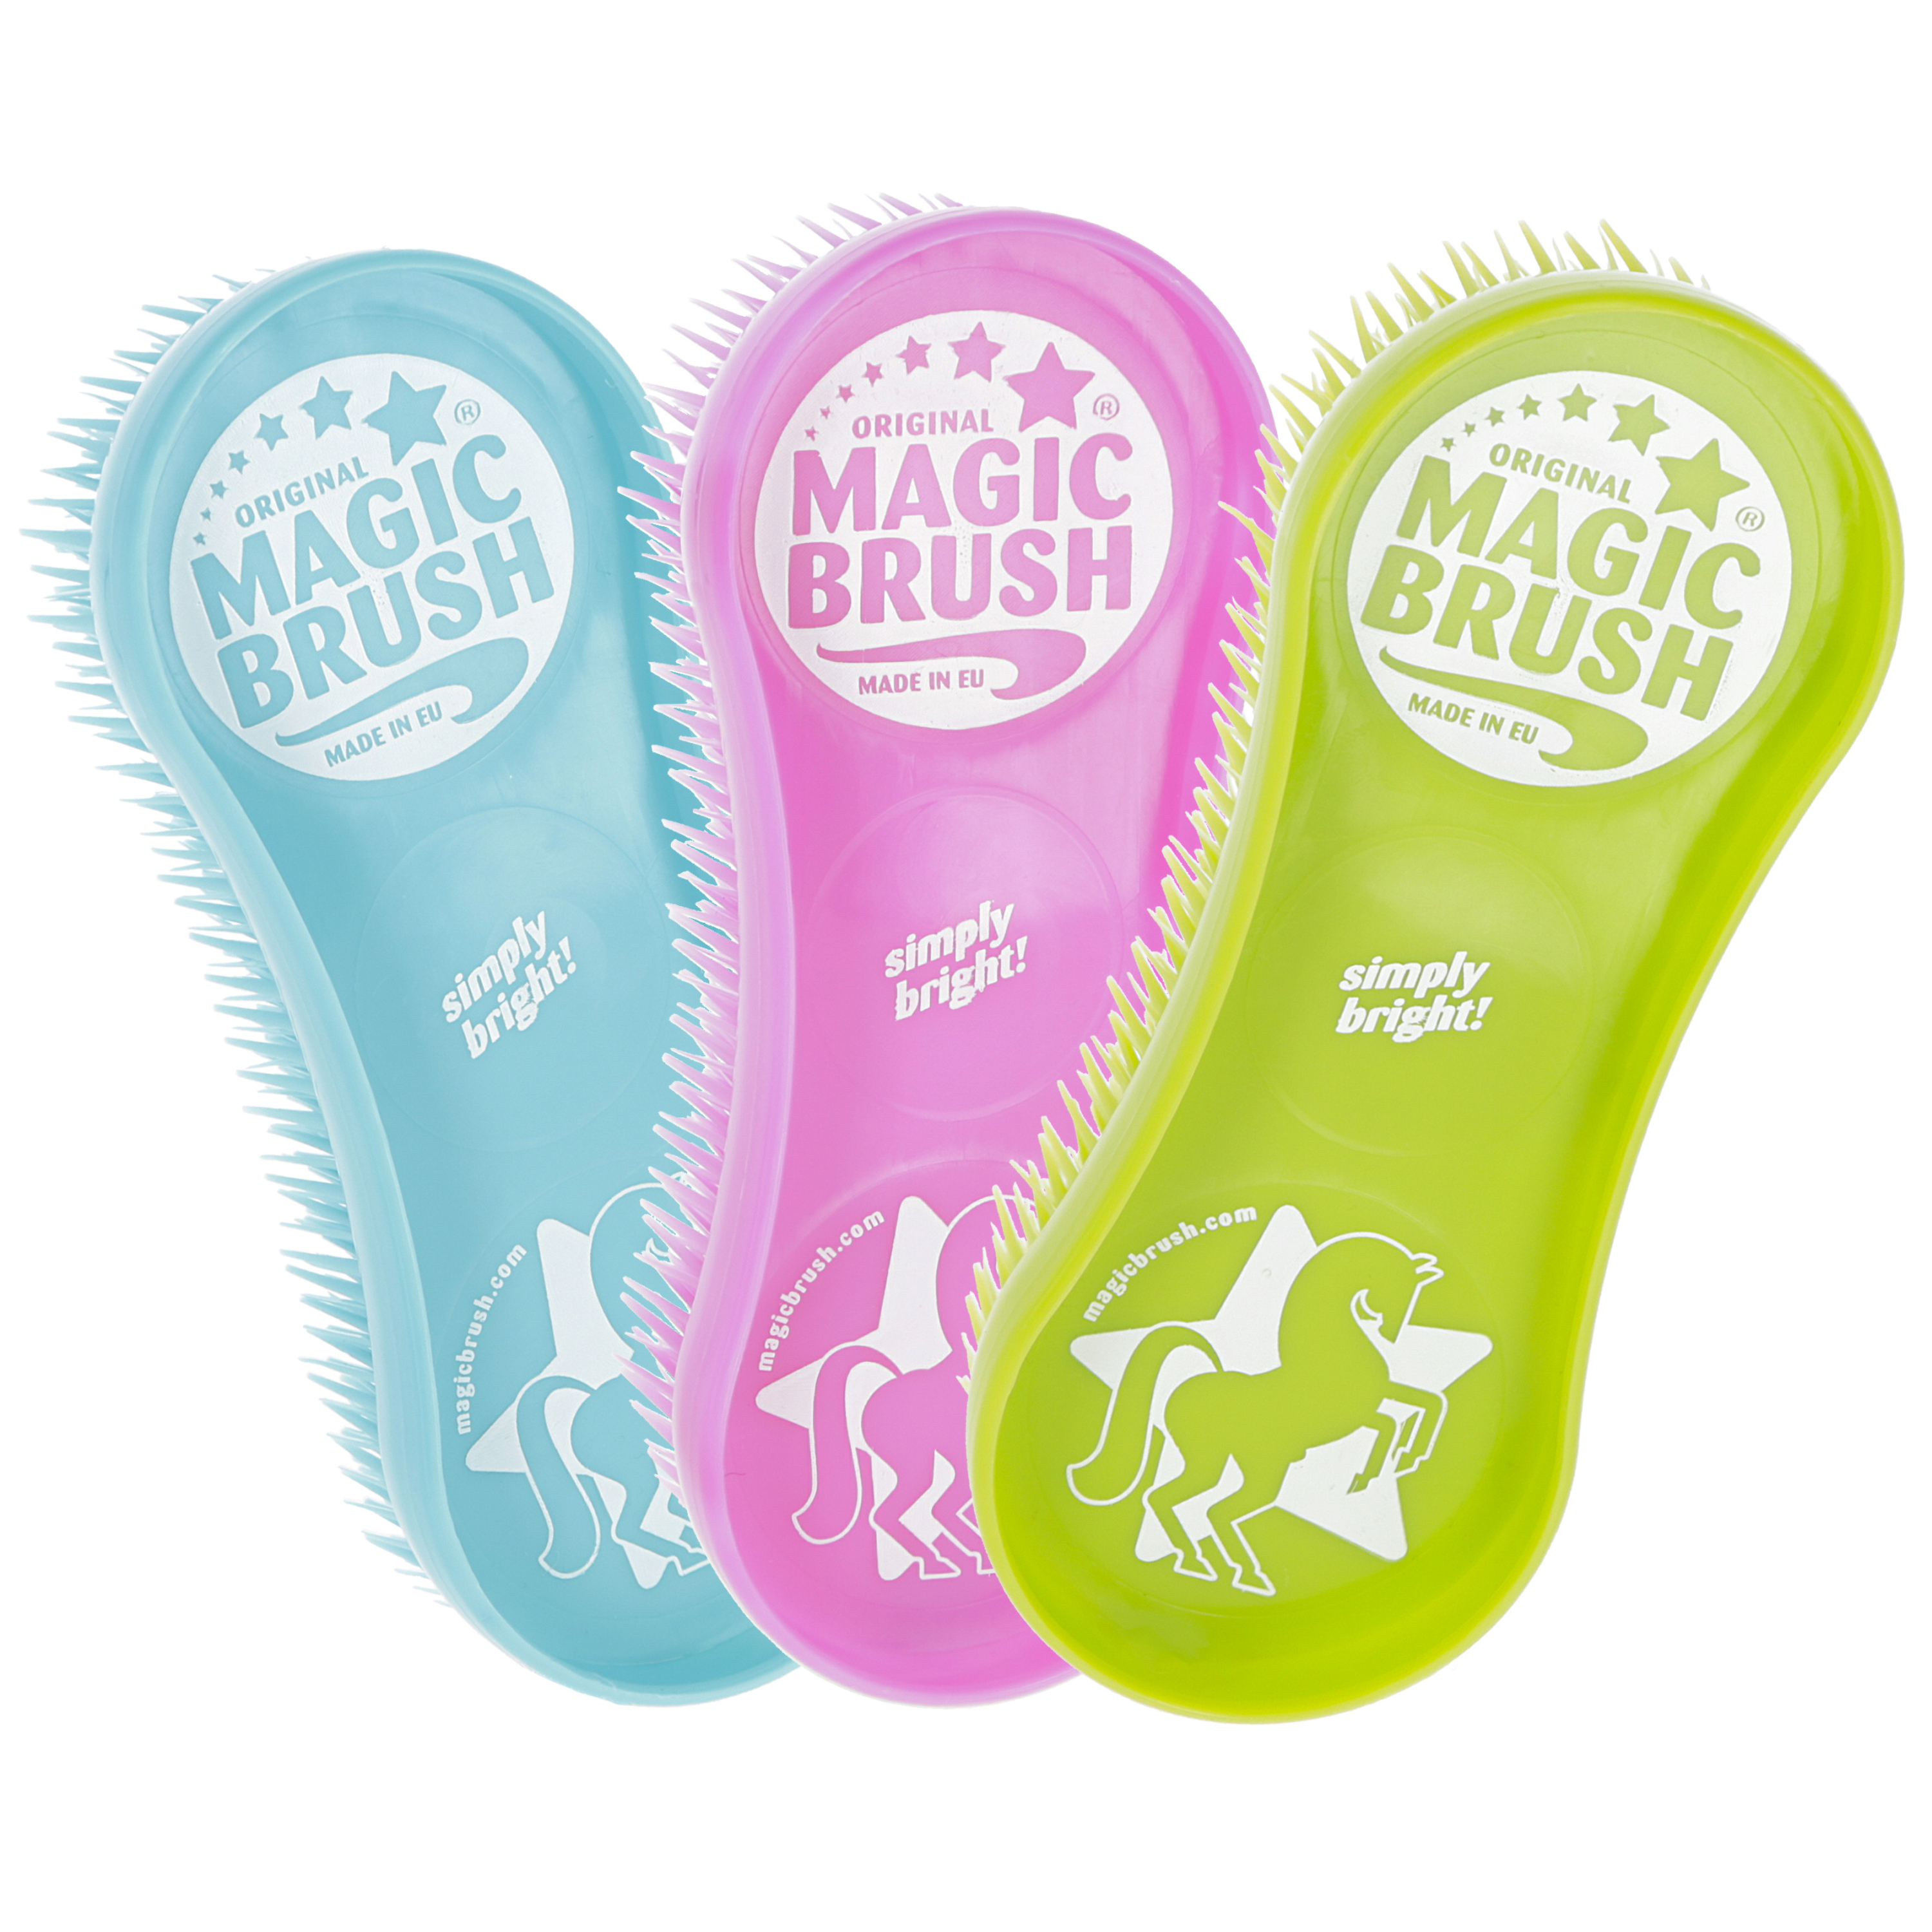 Piggborste Magic Brush Regnbåge, 3-pack